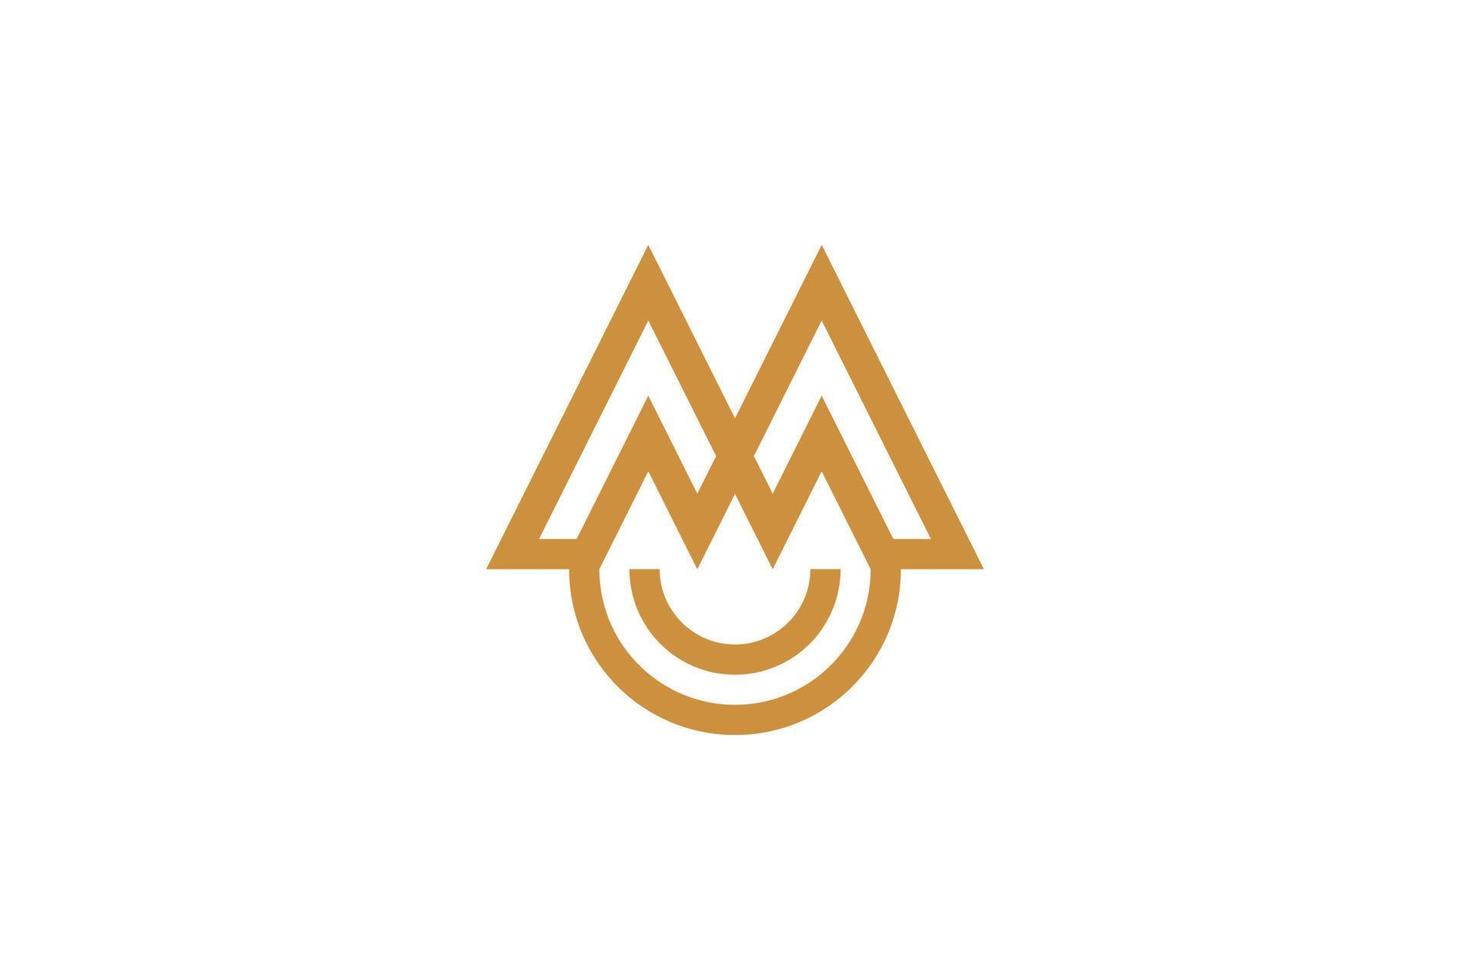 lettre m logo monoline vecteur